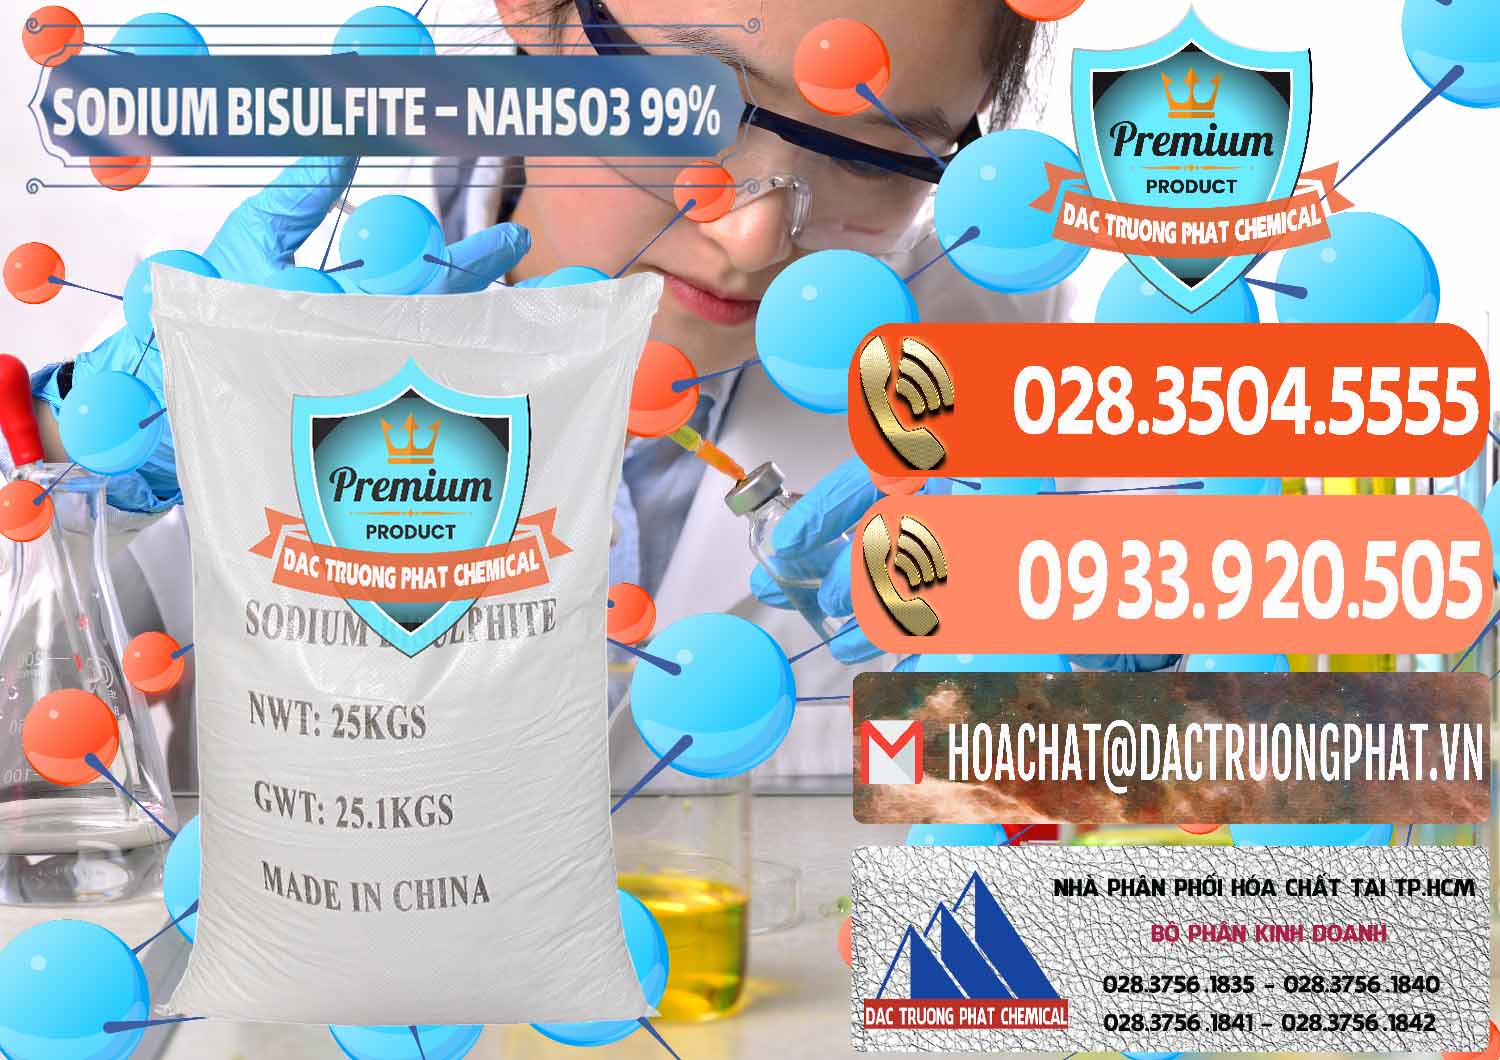 Bán - cung ứng Sodium Bisulfite – NAHSO3 Trung Quốc China - 0140 - Nơi bán - cung cấp hóa chất tại TP.HCM - hoachatmientay.com